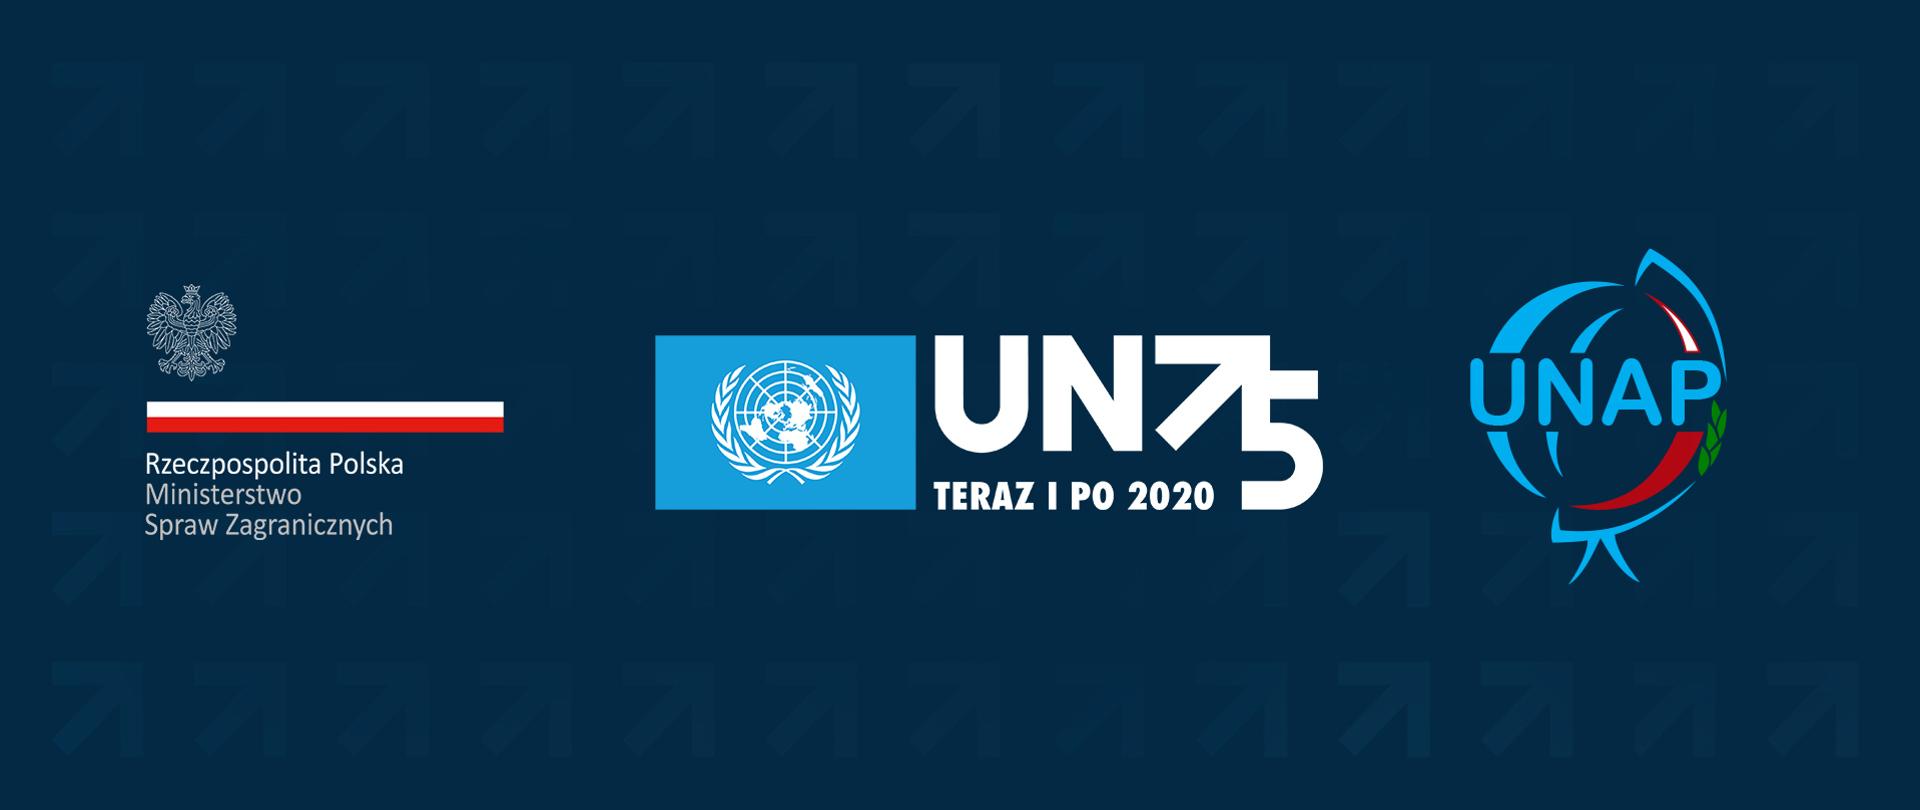 75 Rocznica Utworzenia ONZ